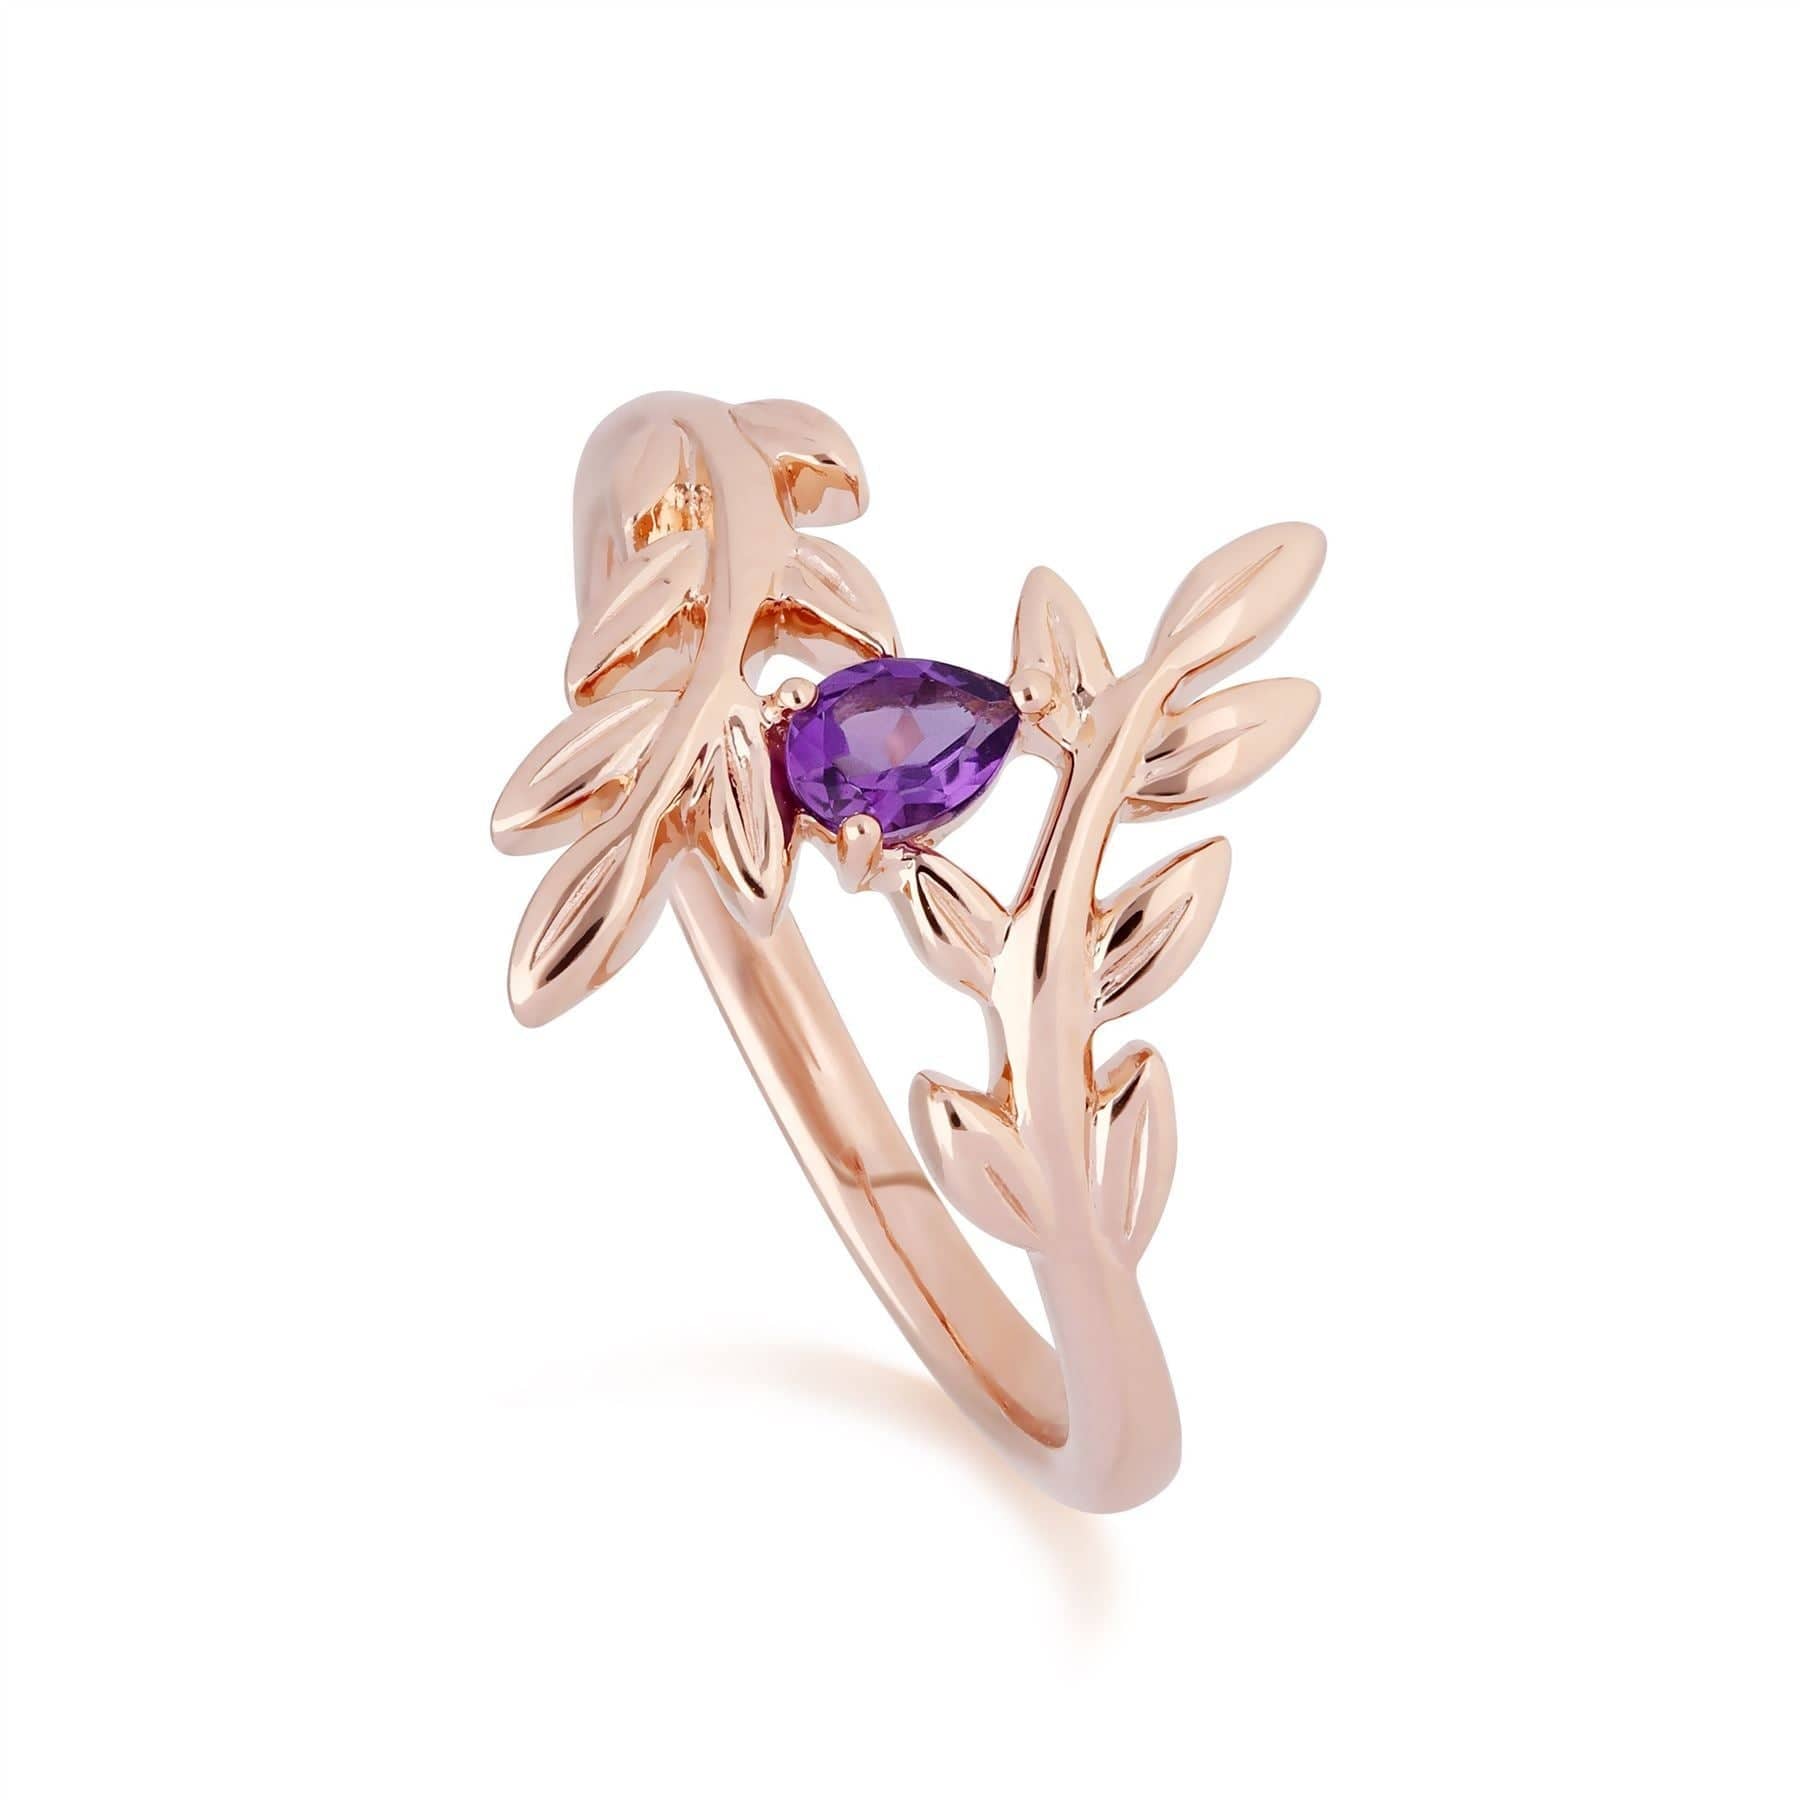 135L0306019-135R1862019 O Leaf Amethyst Bracelet & Ring Set in 9ct Rose Gold 3